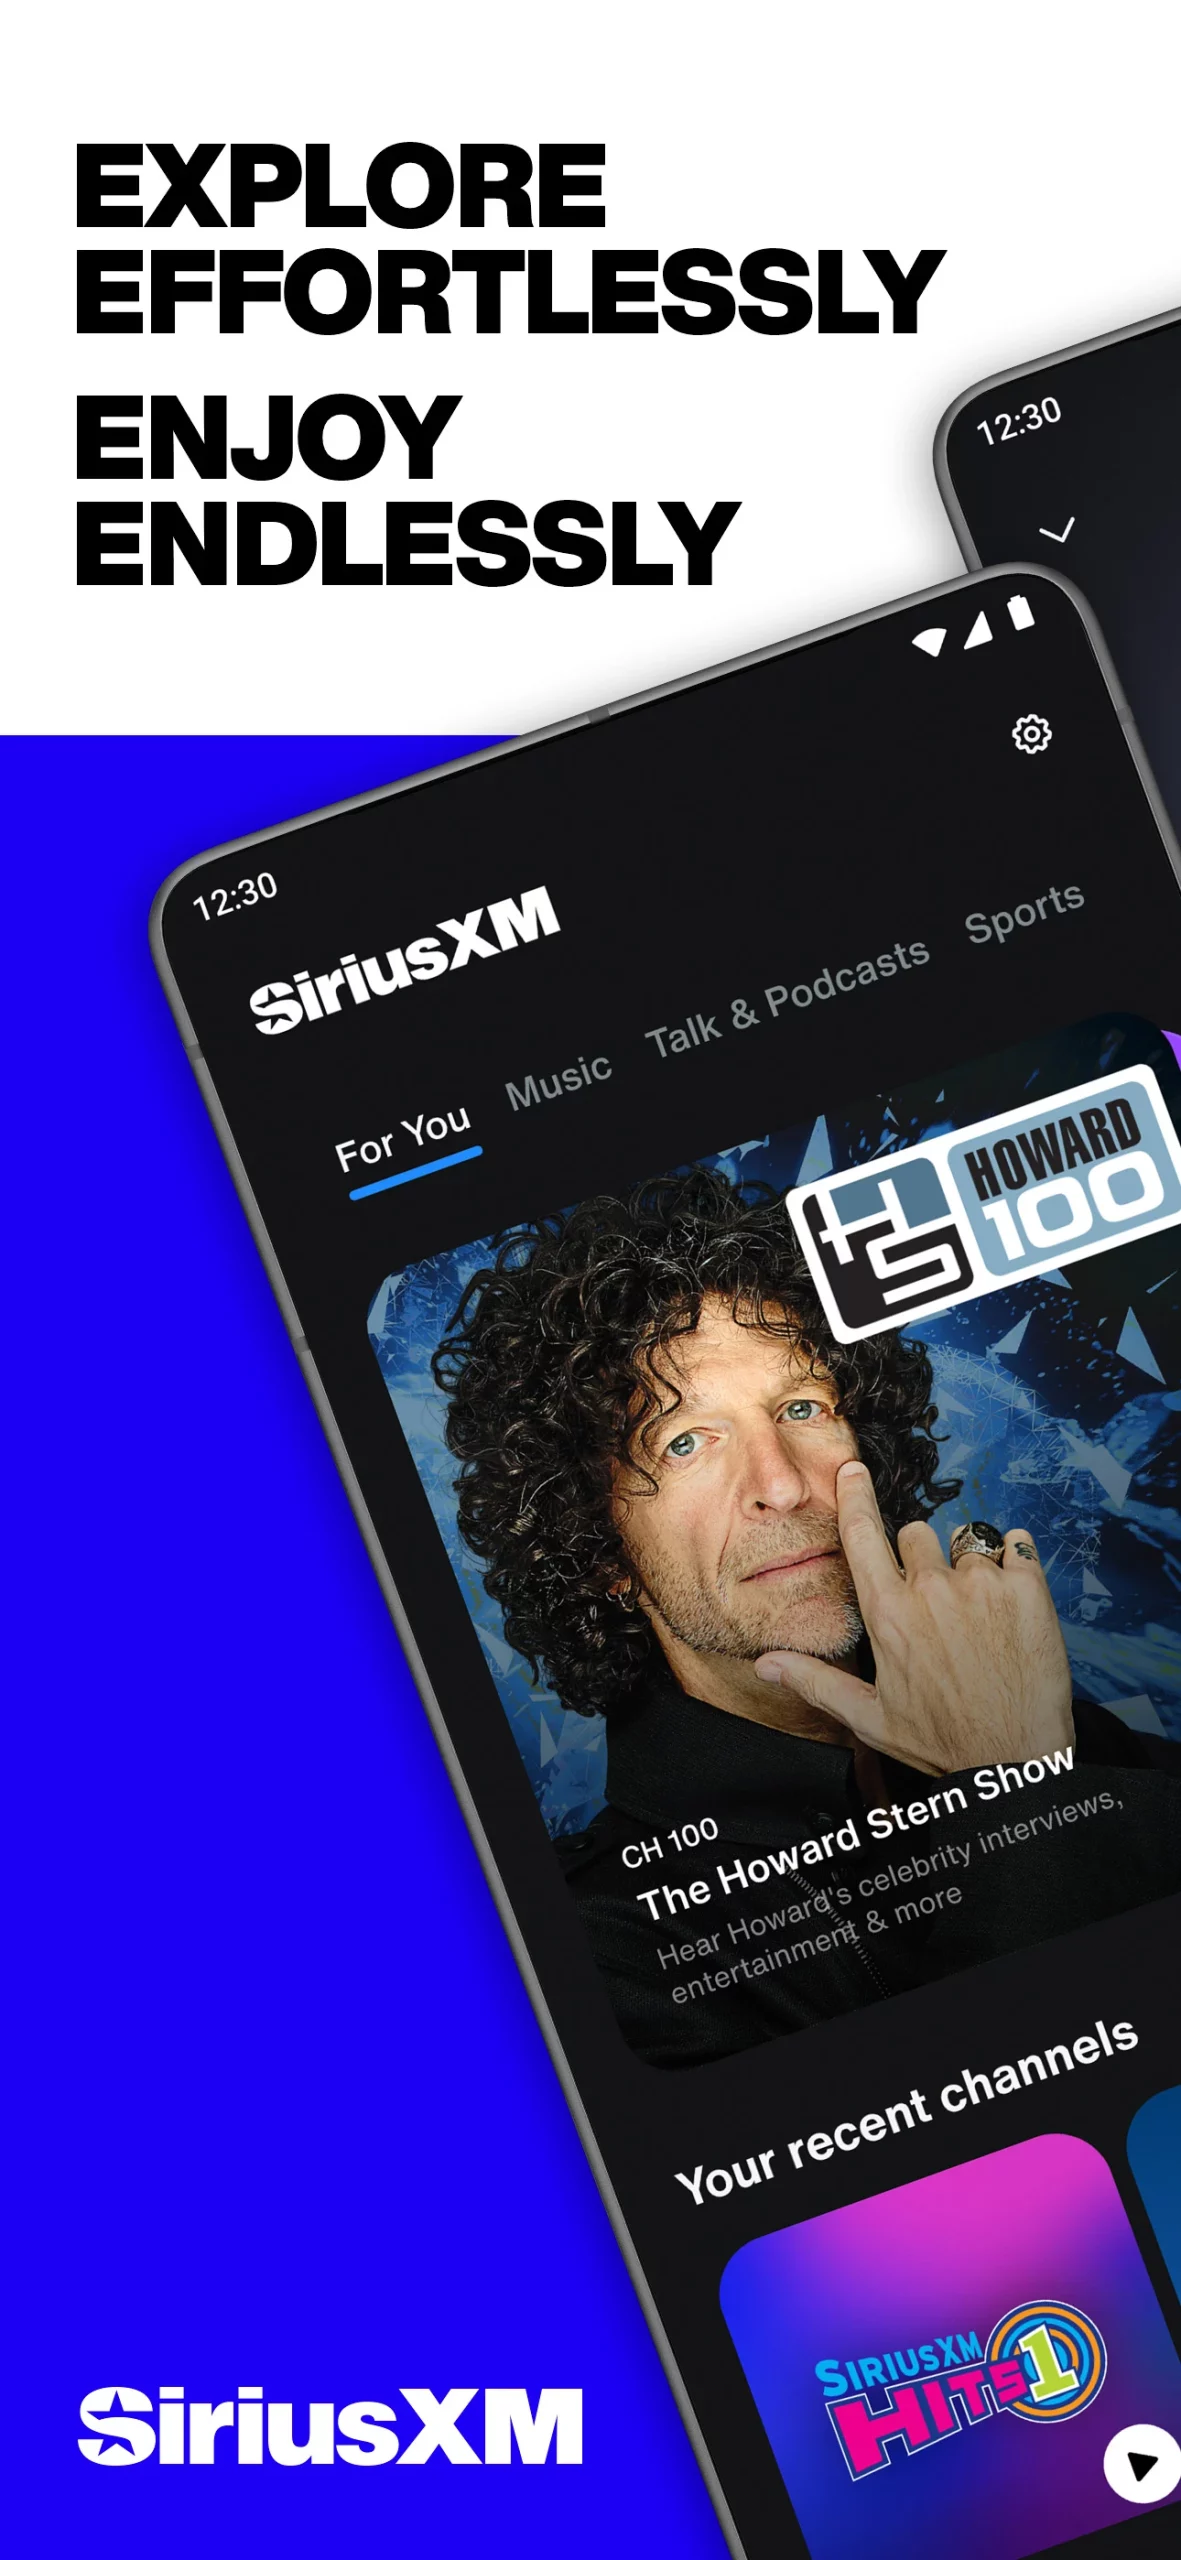 SiriusXM app